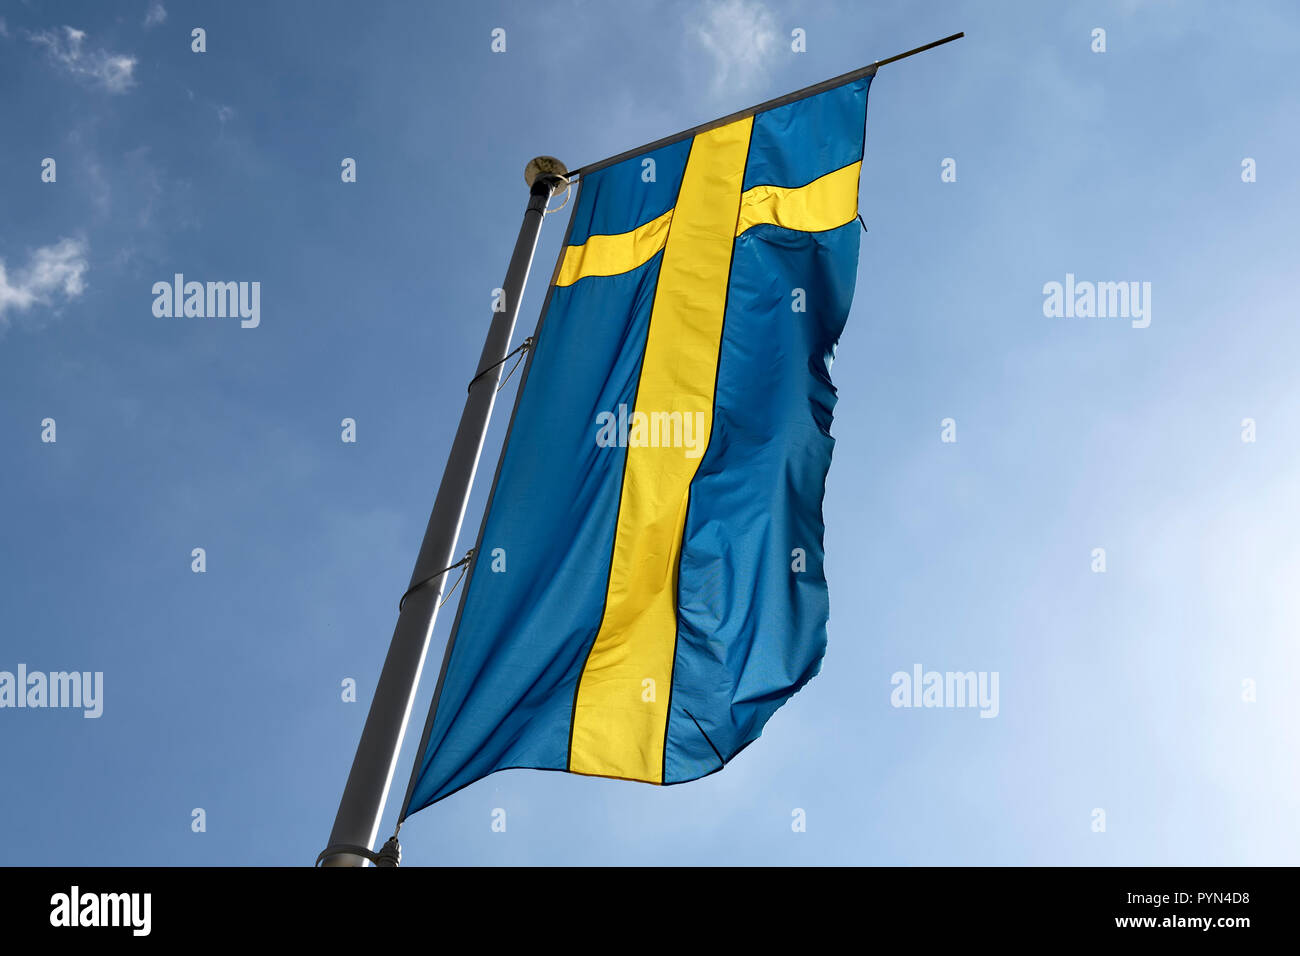 Swedish national flag, Schwedische Nationalflagge Stock Photo